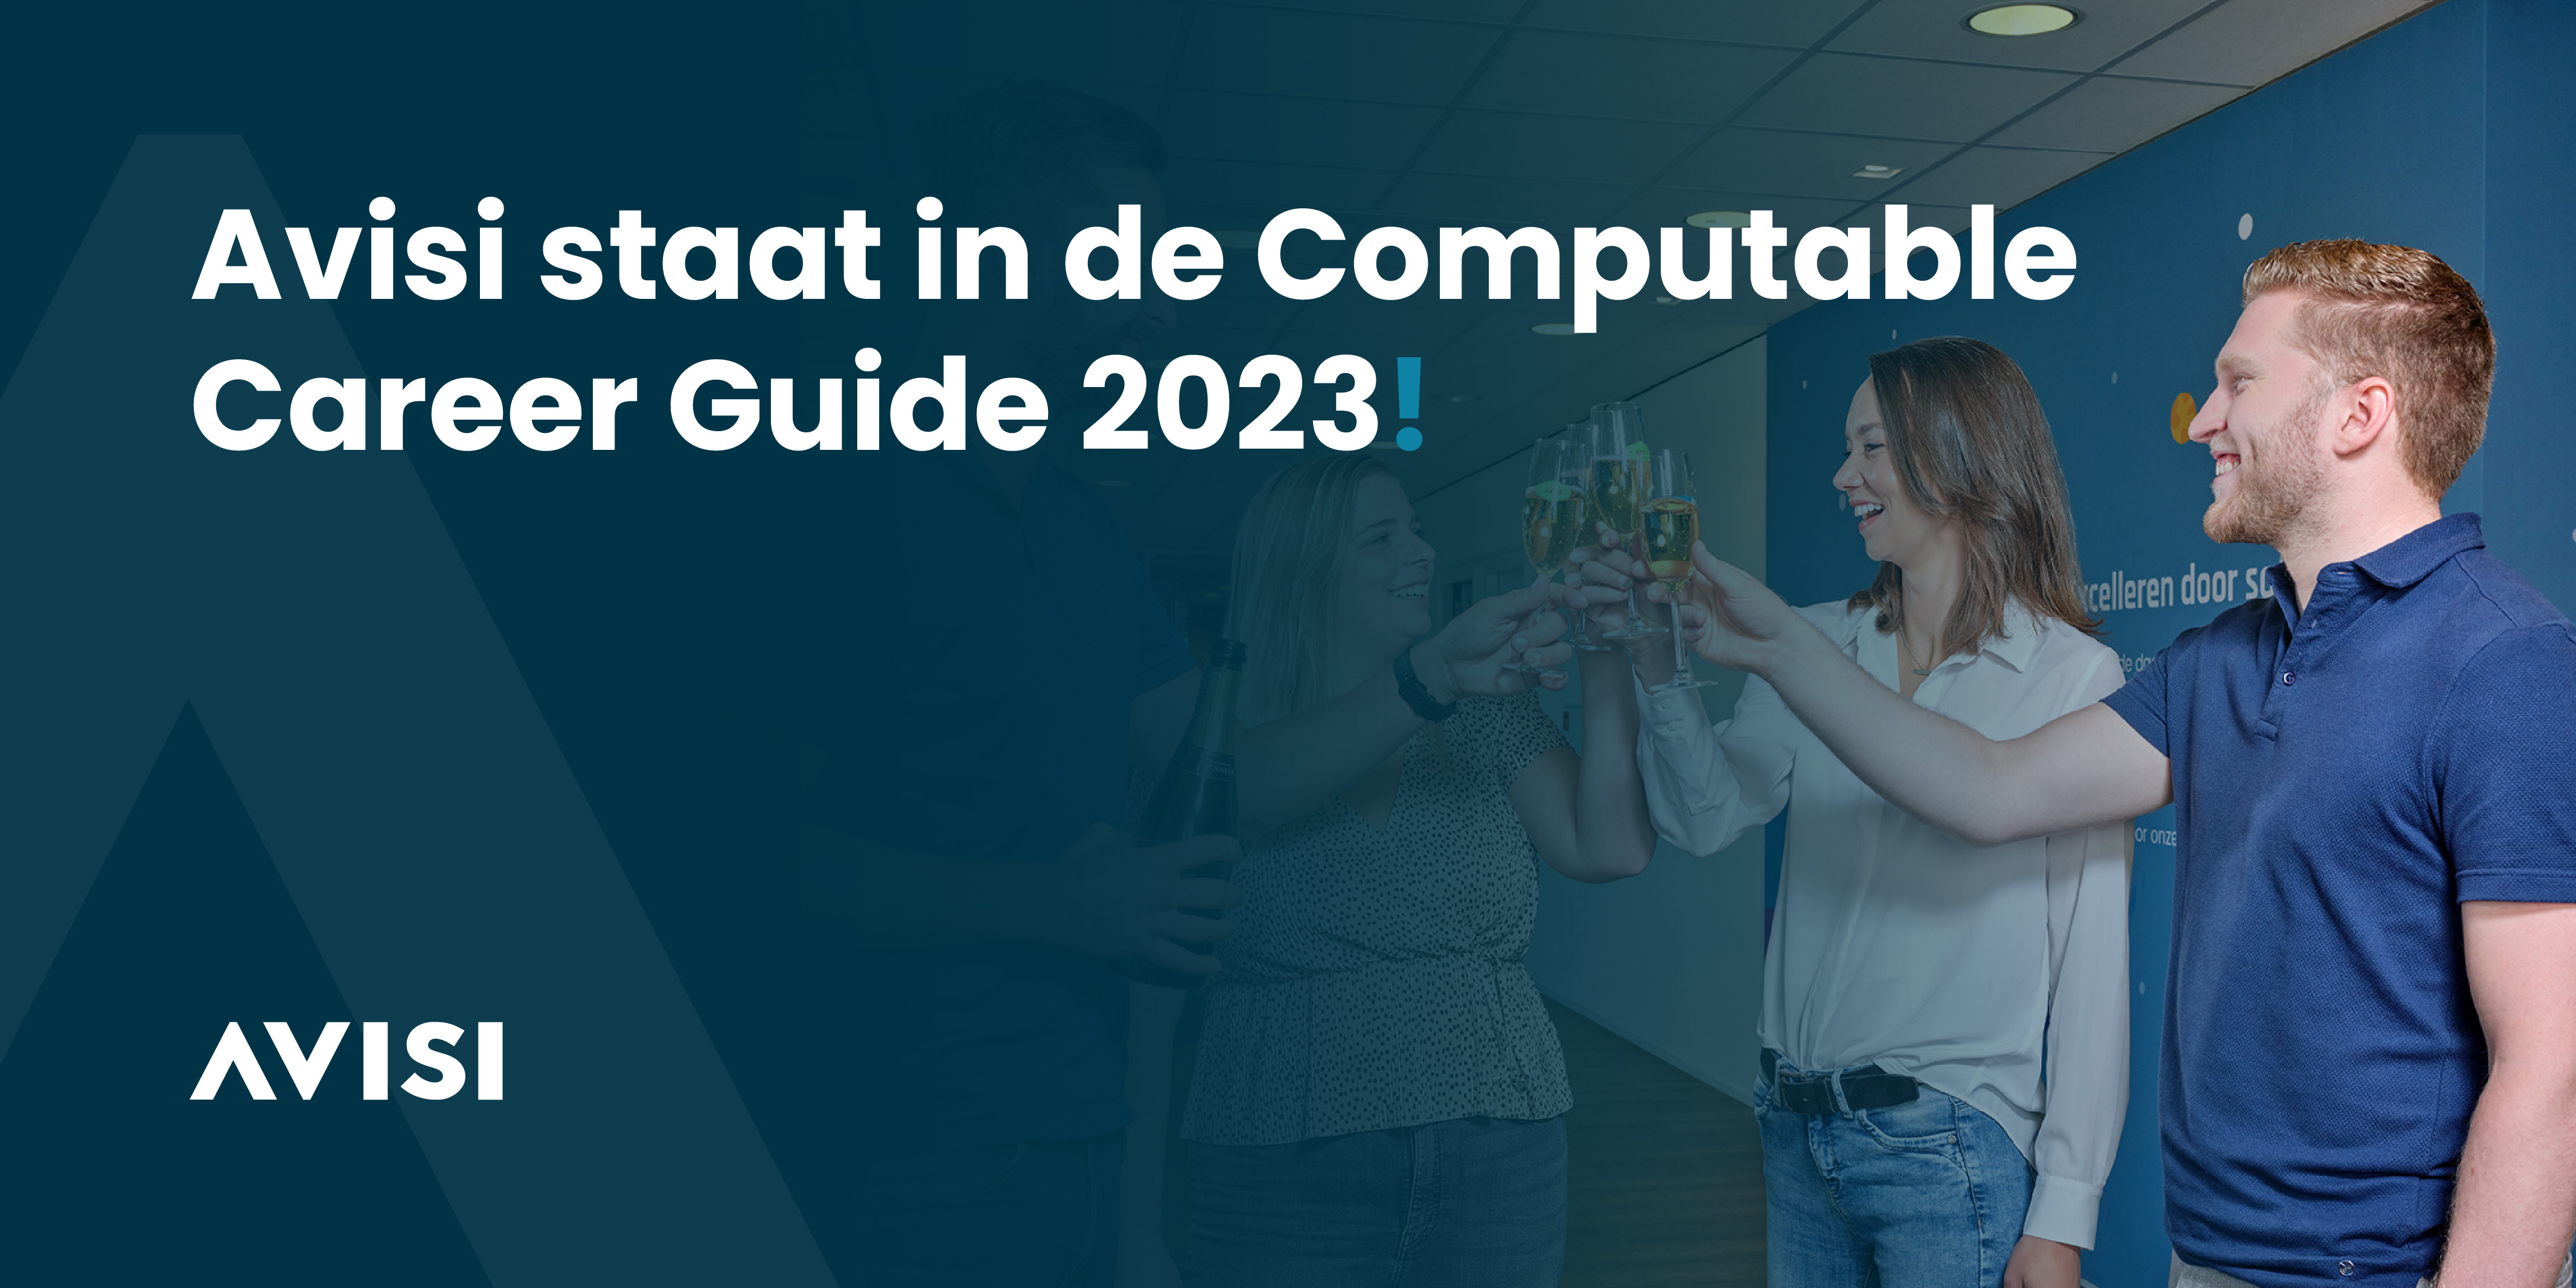 Avisi staat in de Computable Career Guide 2023! 🎉